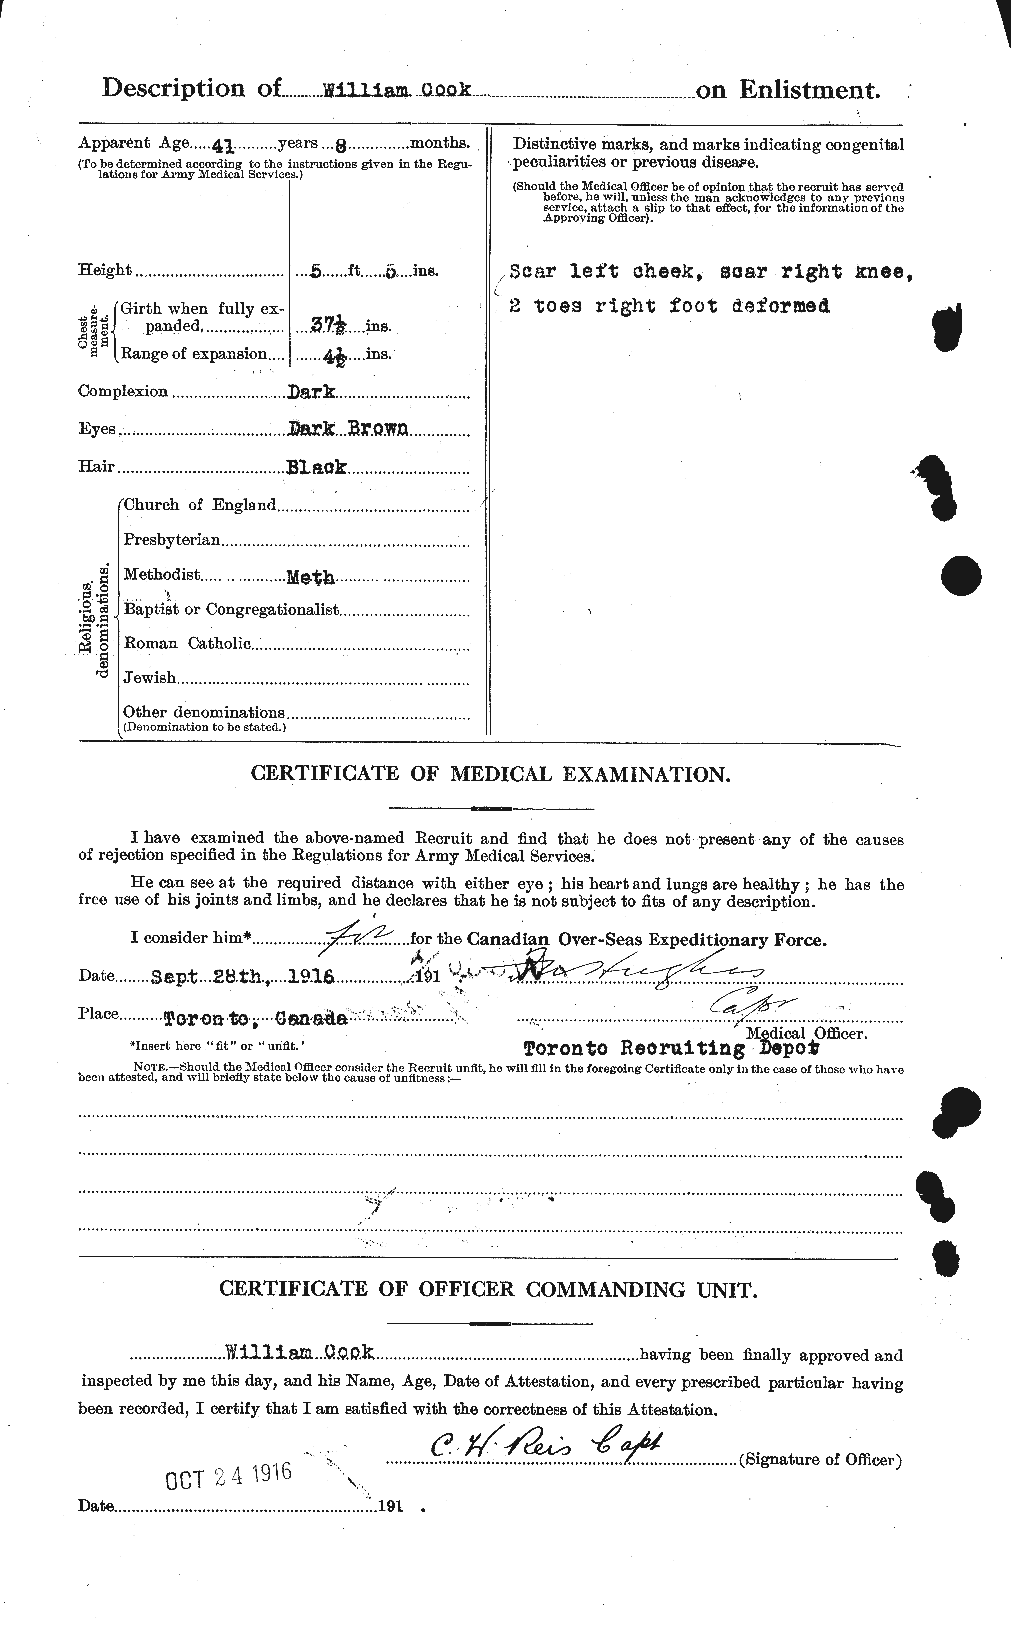 Dossiers du Personnel de la Première Guerre mondiale - CEC 074732b